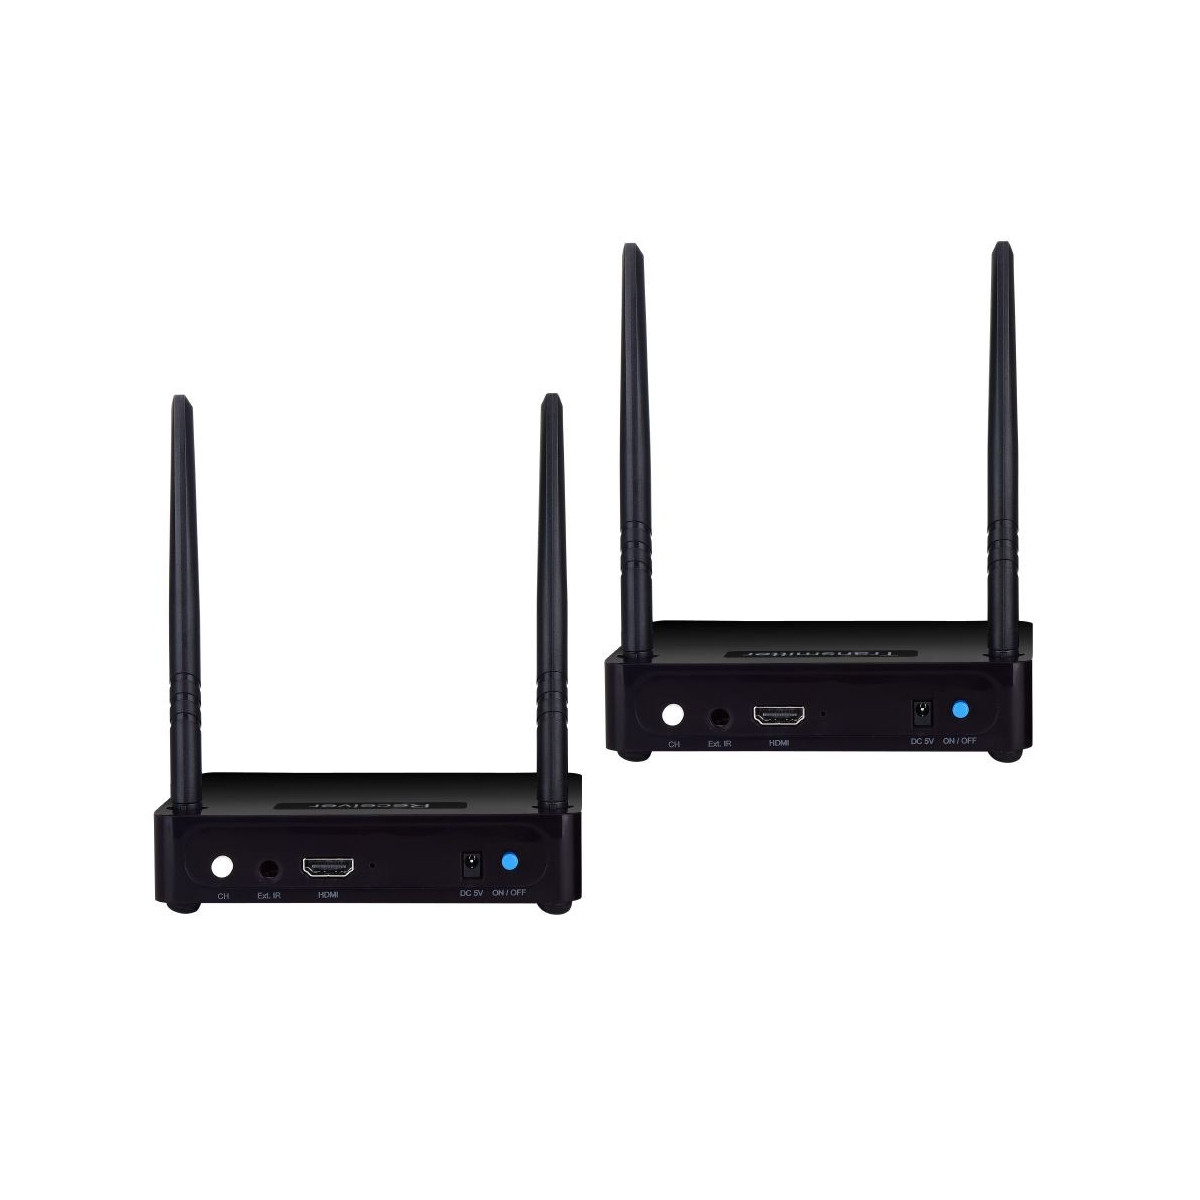 Trasmettitore ripetitore di segnale audio video wireless 5,8 Ghz LIFE SKY  SKYHD - Area Illumina